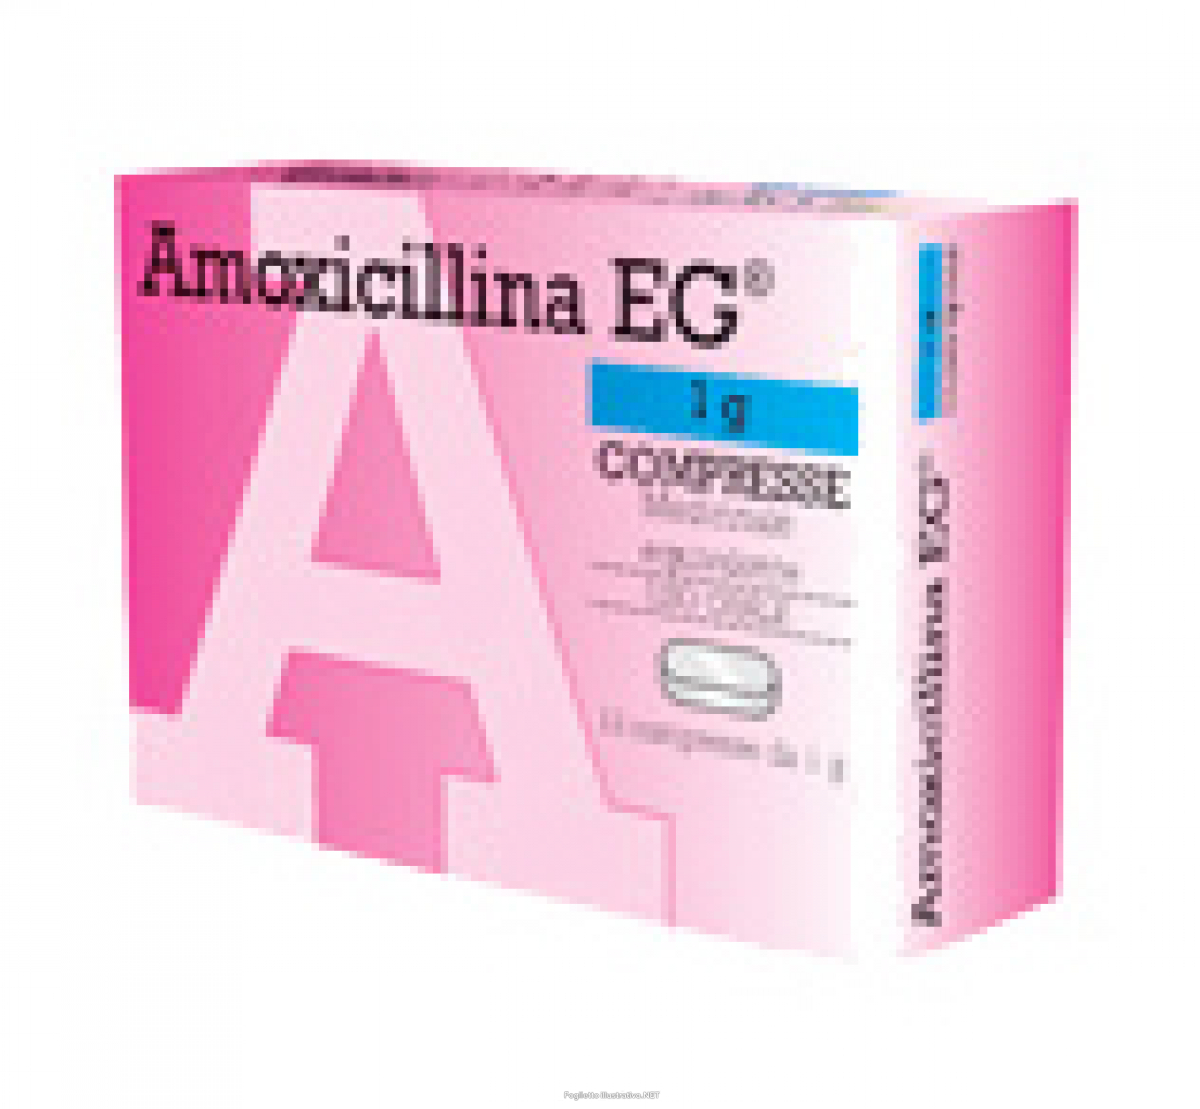 Quante volte al giorno si prende amoxicillina e acido clavulanico?